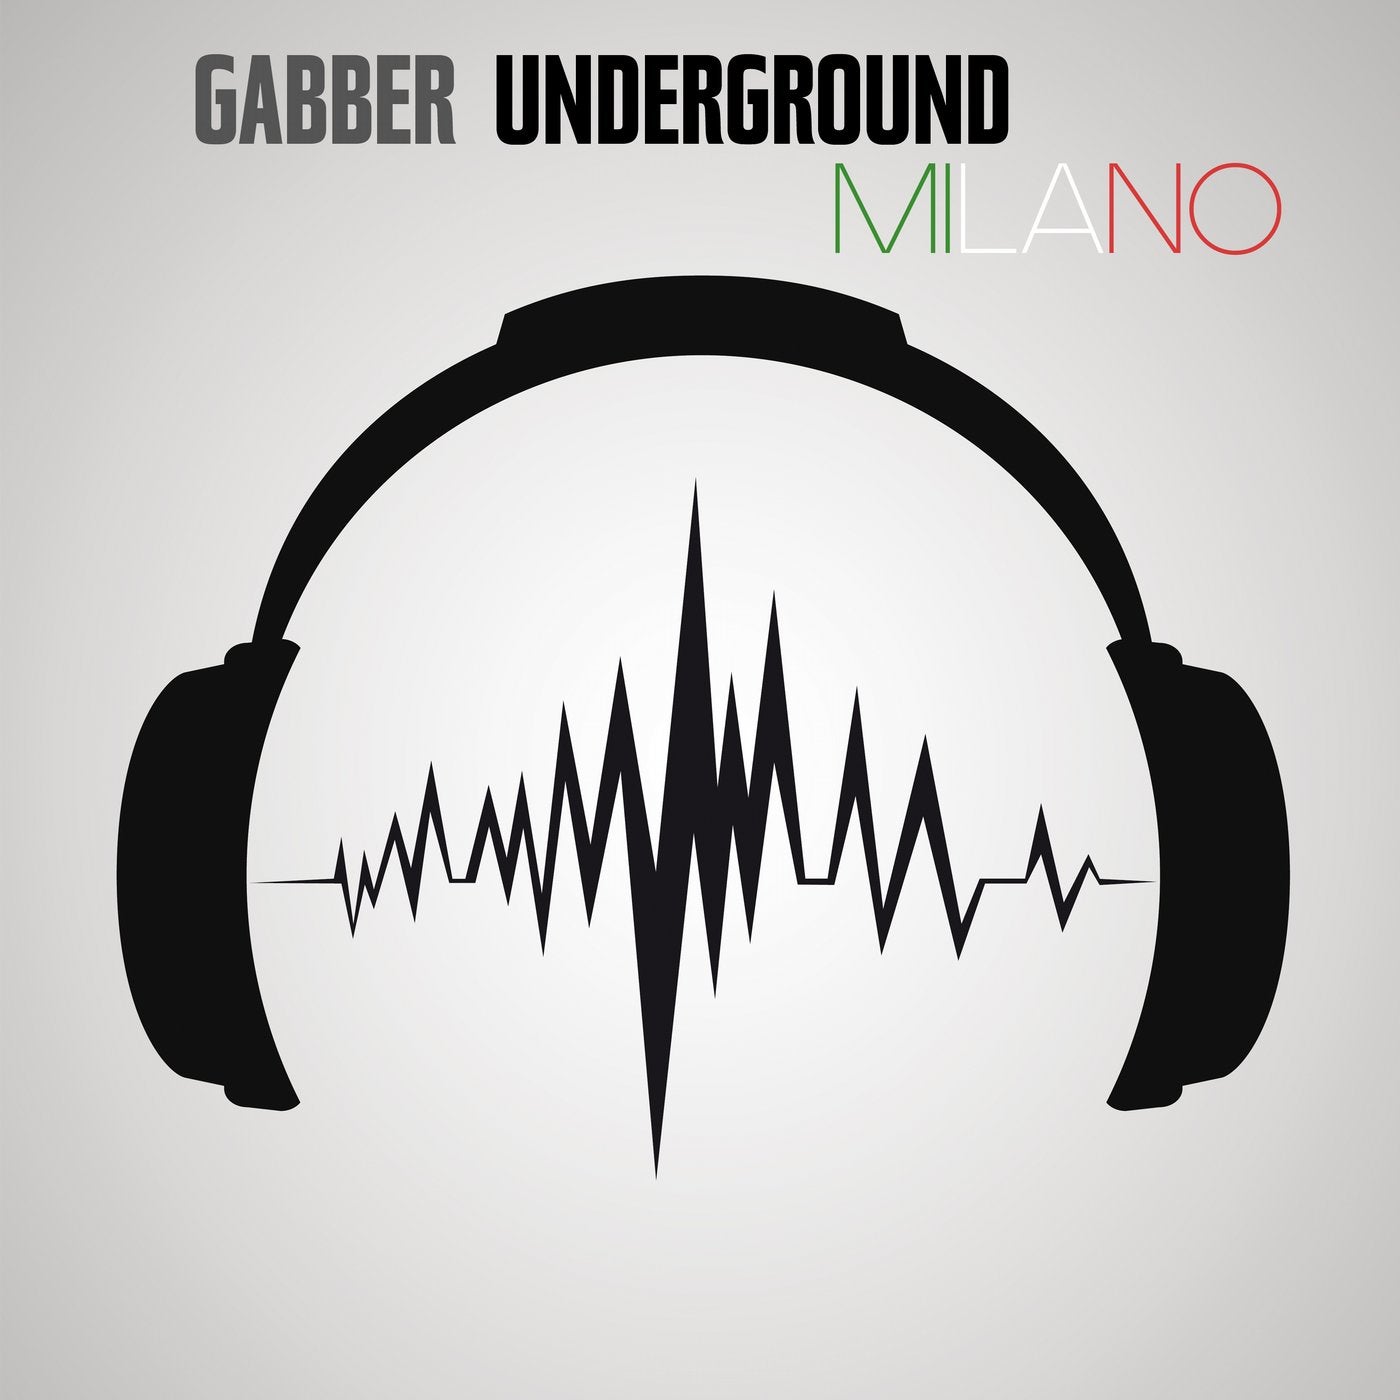 Gabber Underground Milano